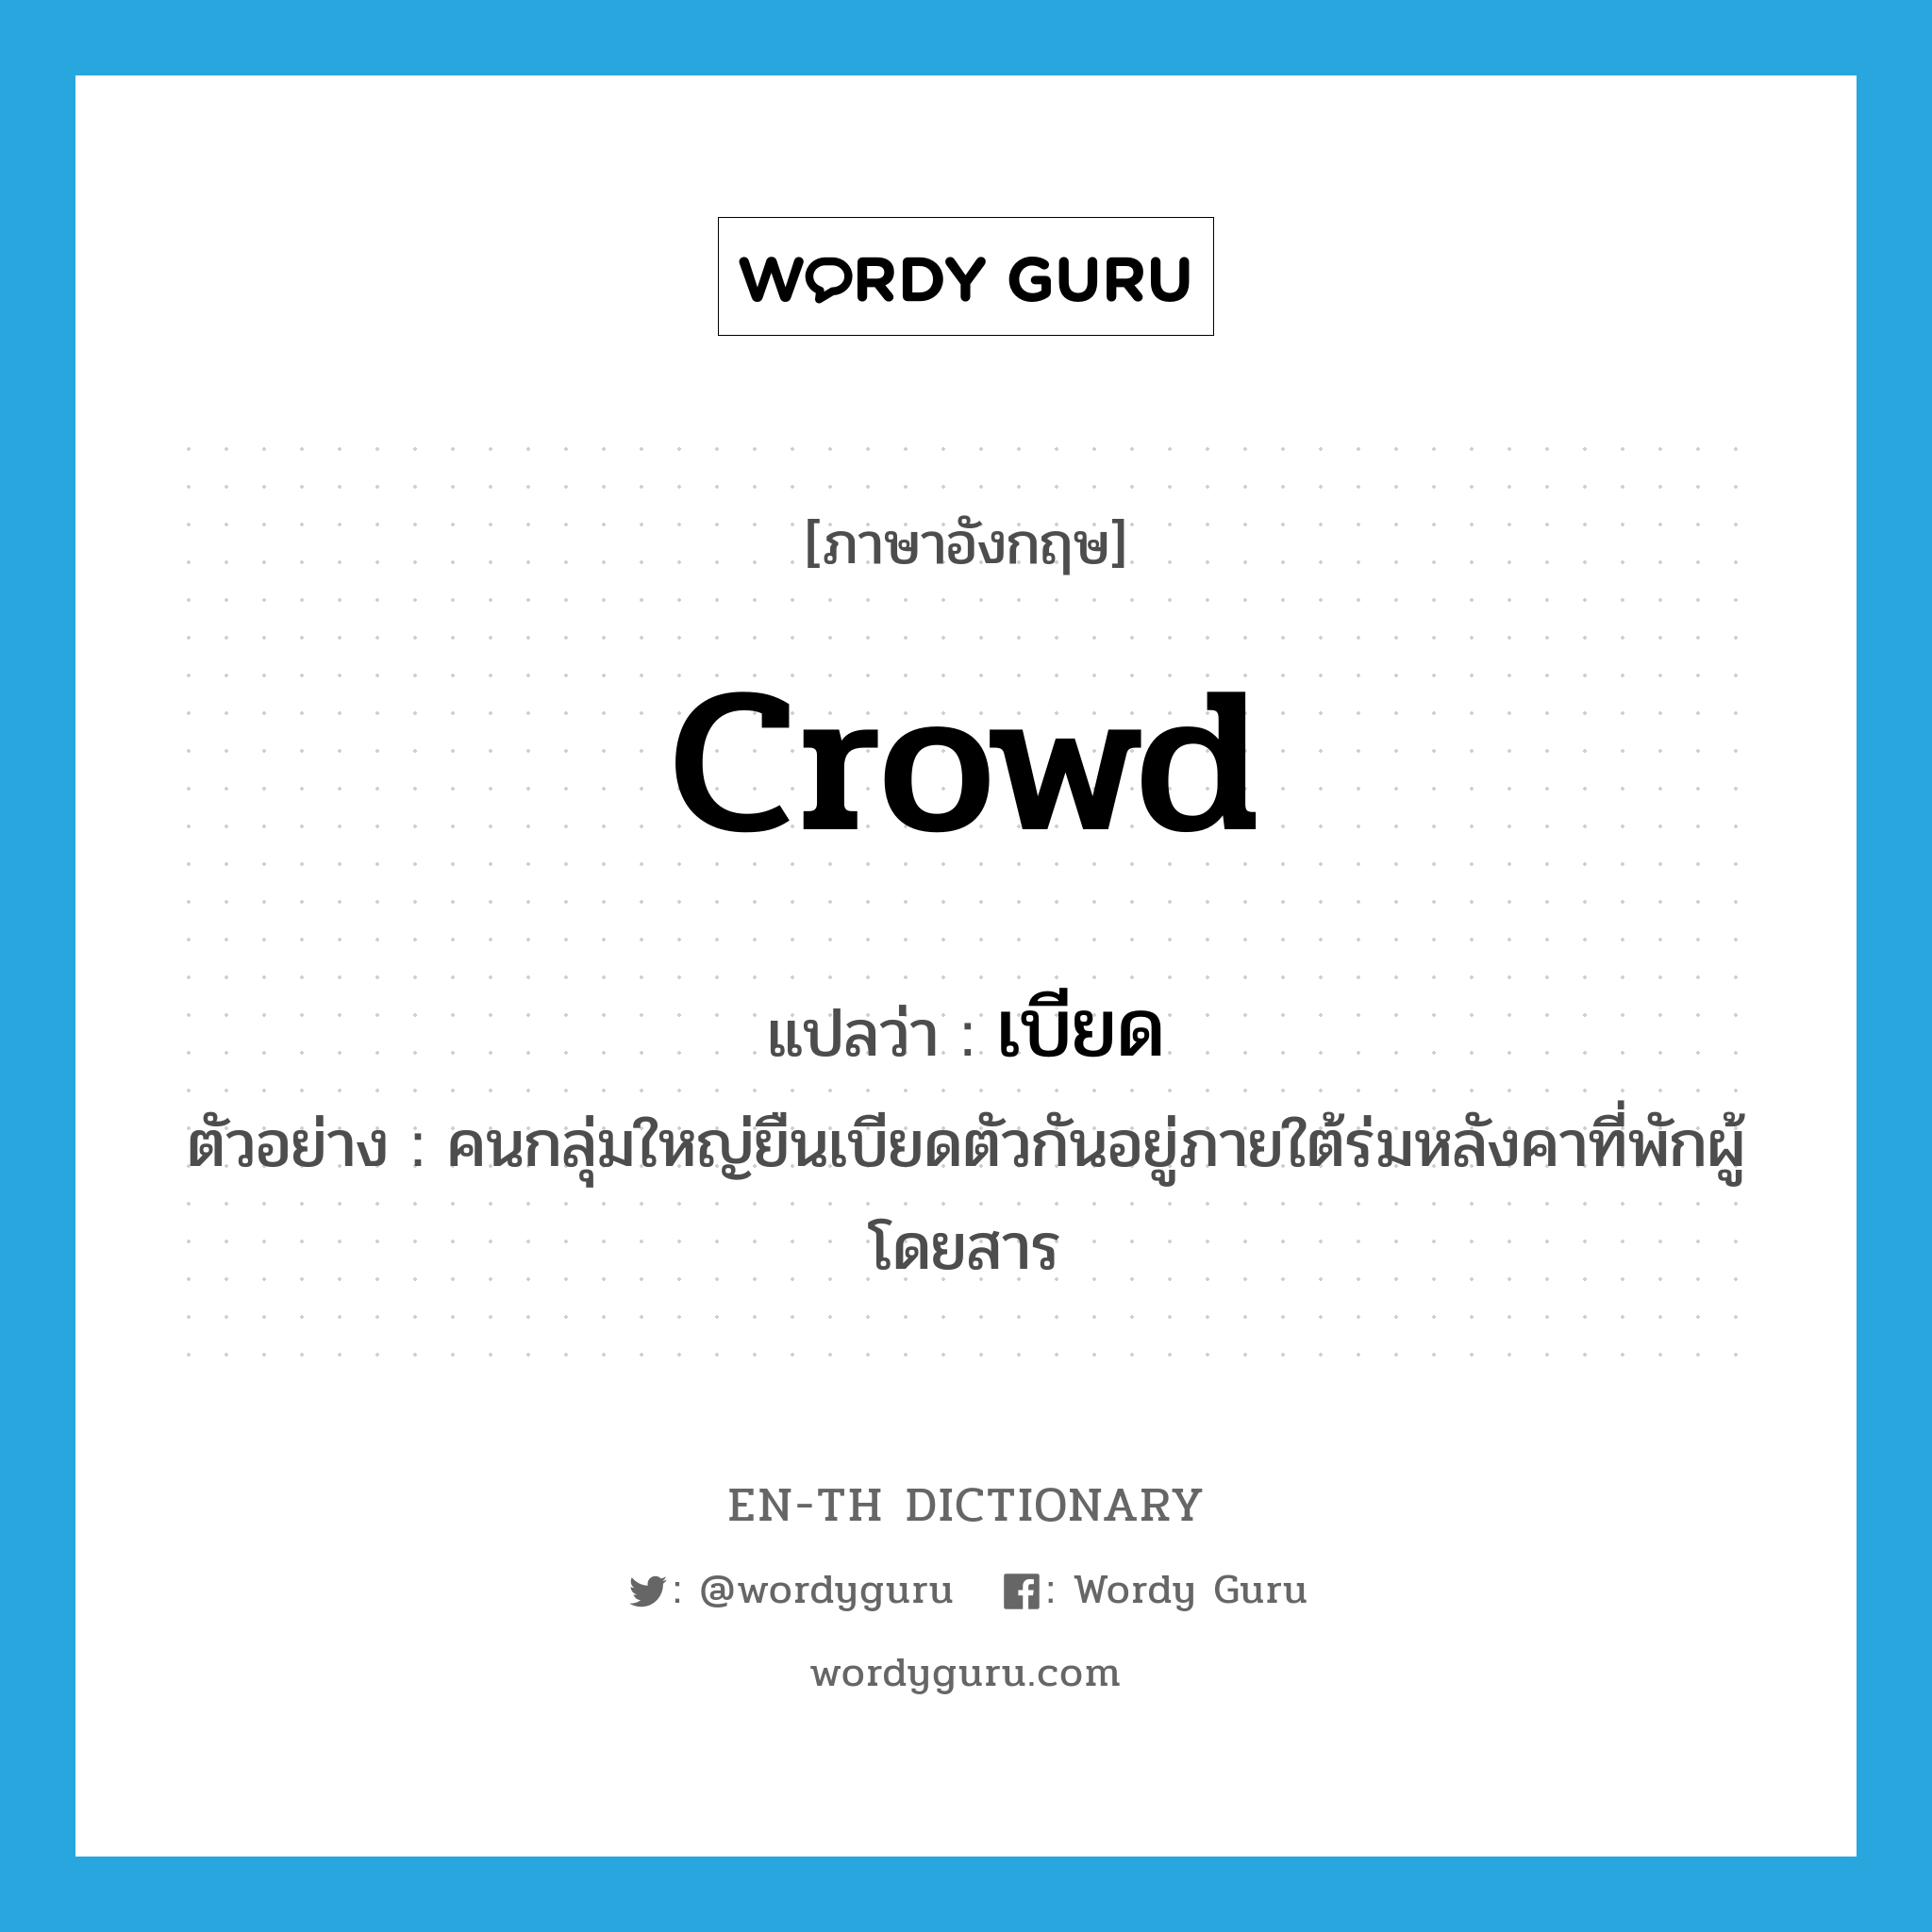 crowd แปลว่า?, คำศัพท์ภาษาอังกฤษ crowd แปลว่า เบียด ประเภท V ตัวอย่าง คนกลุ่มใหญ่ยืนเบียดตัวกันอยู่ภายใต้ร่มหลังคาที่พักผู้โดยสาร หมวด V